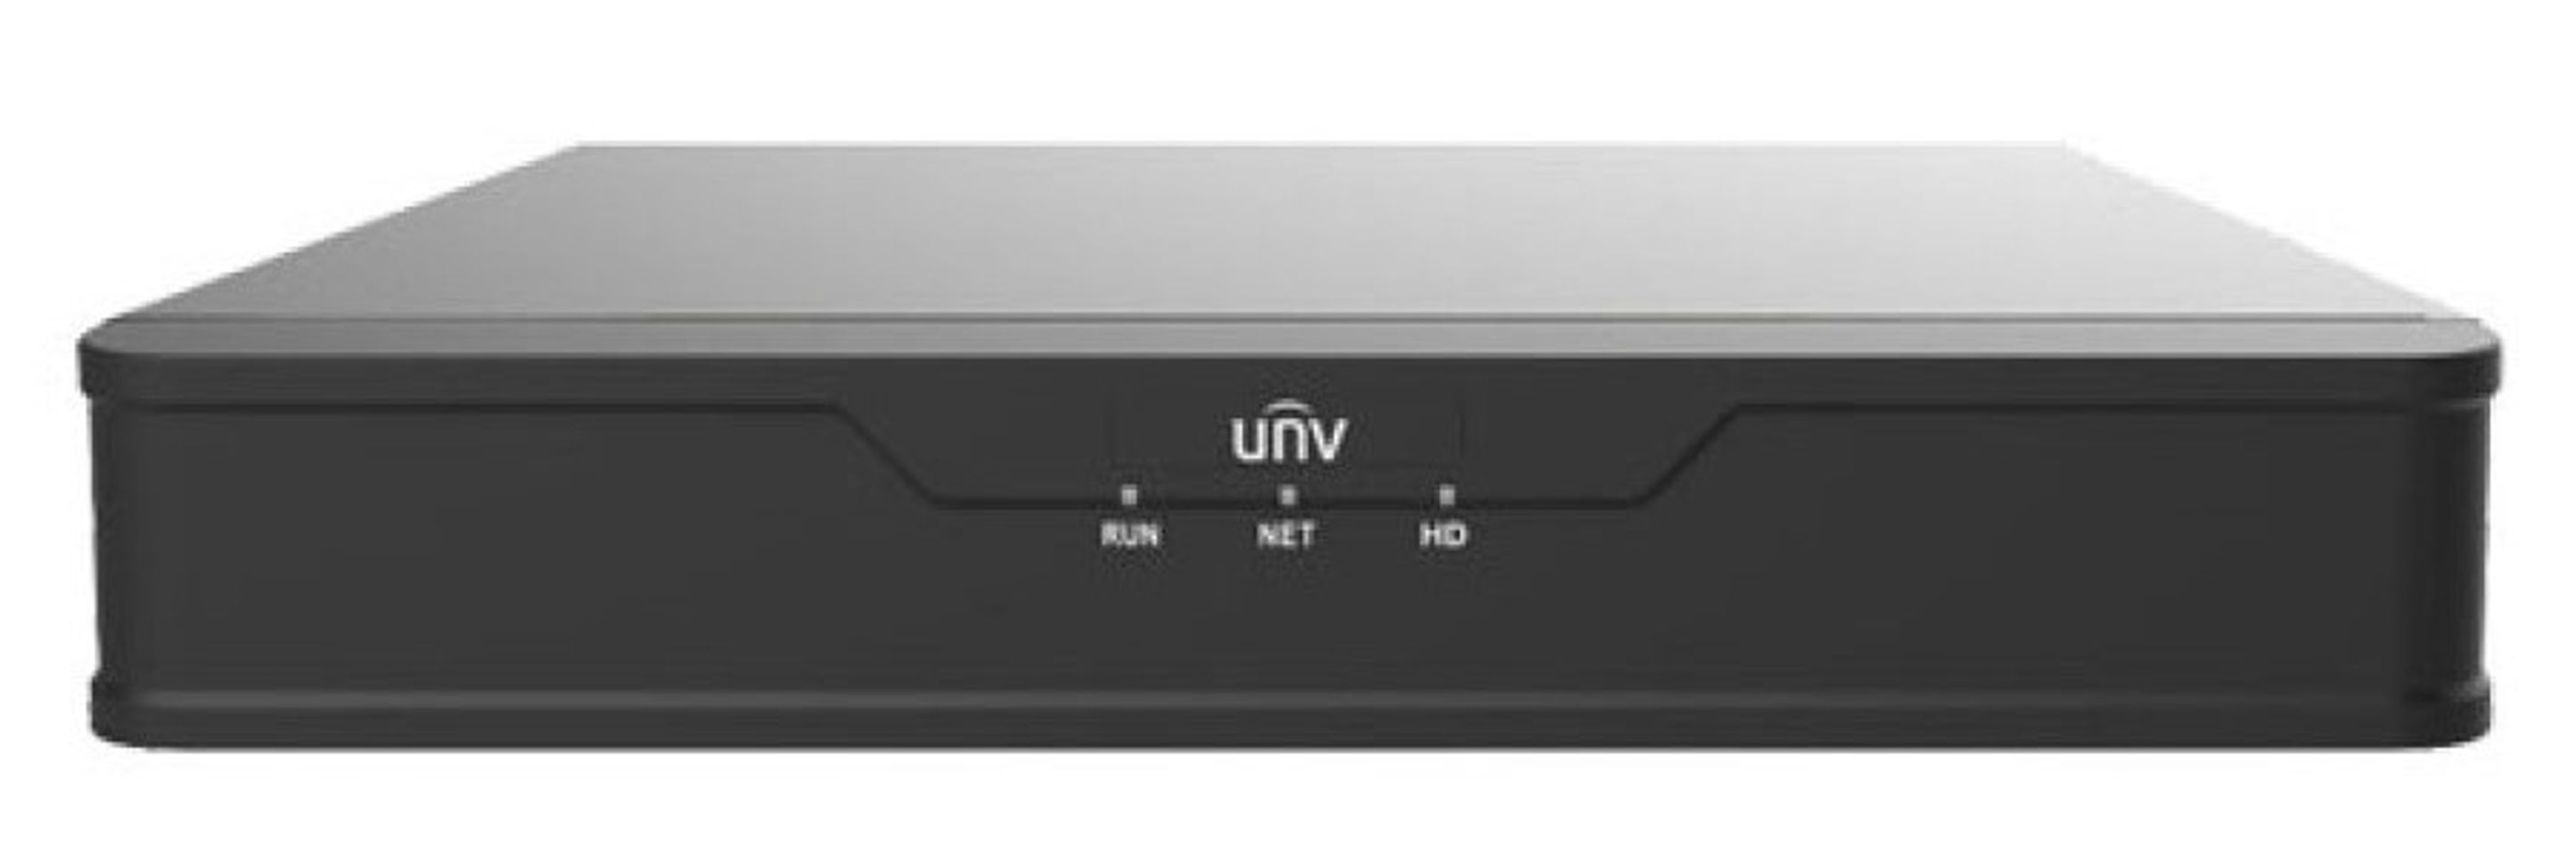 Đầu ghi hình camera IP UNV 4 kênh POE NVR301-04S3-P4